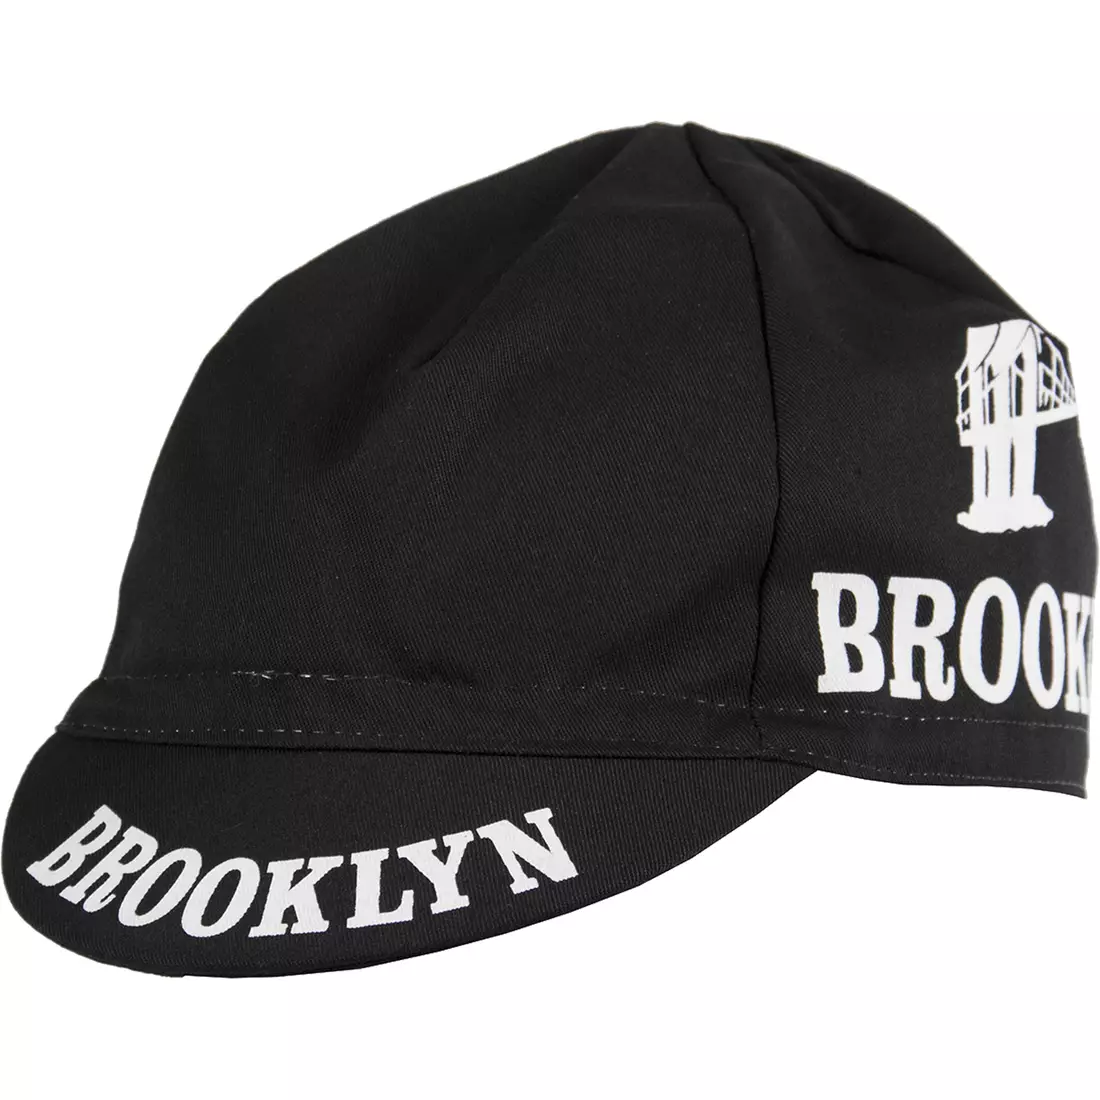 Şapcă de ciclism GIORDANA SS18 - Brooklyn - Negru/Alb GI-COCA-TEAM-BRBK mărime unică